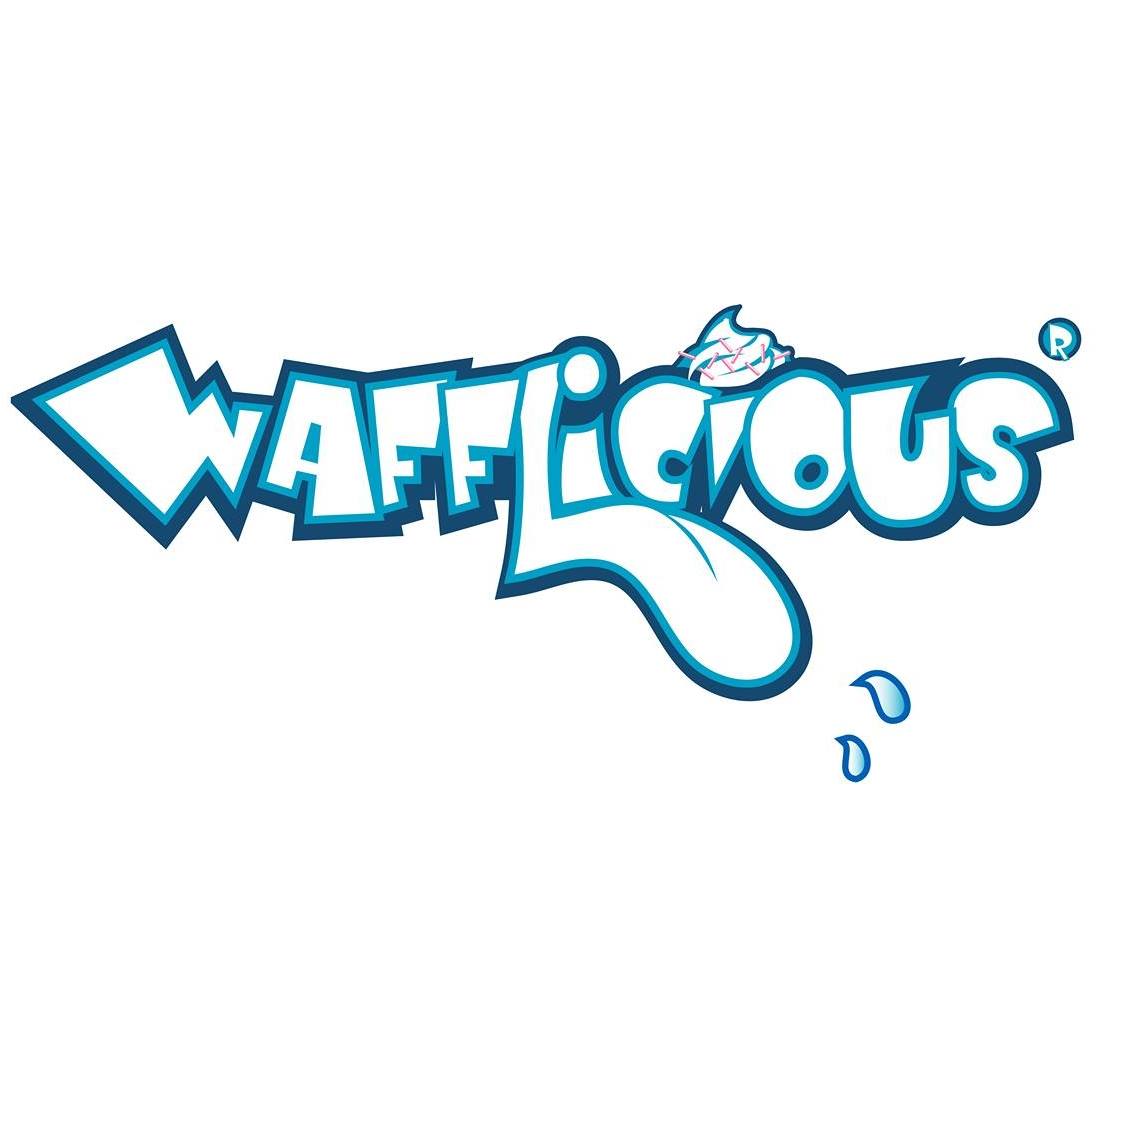 Wafflicious